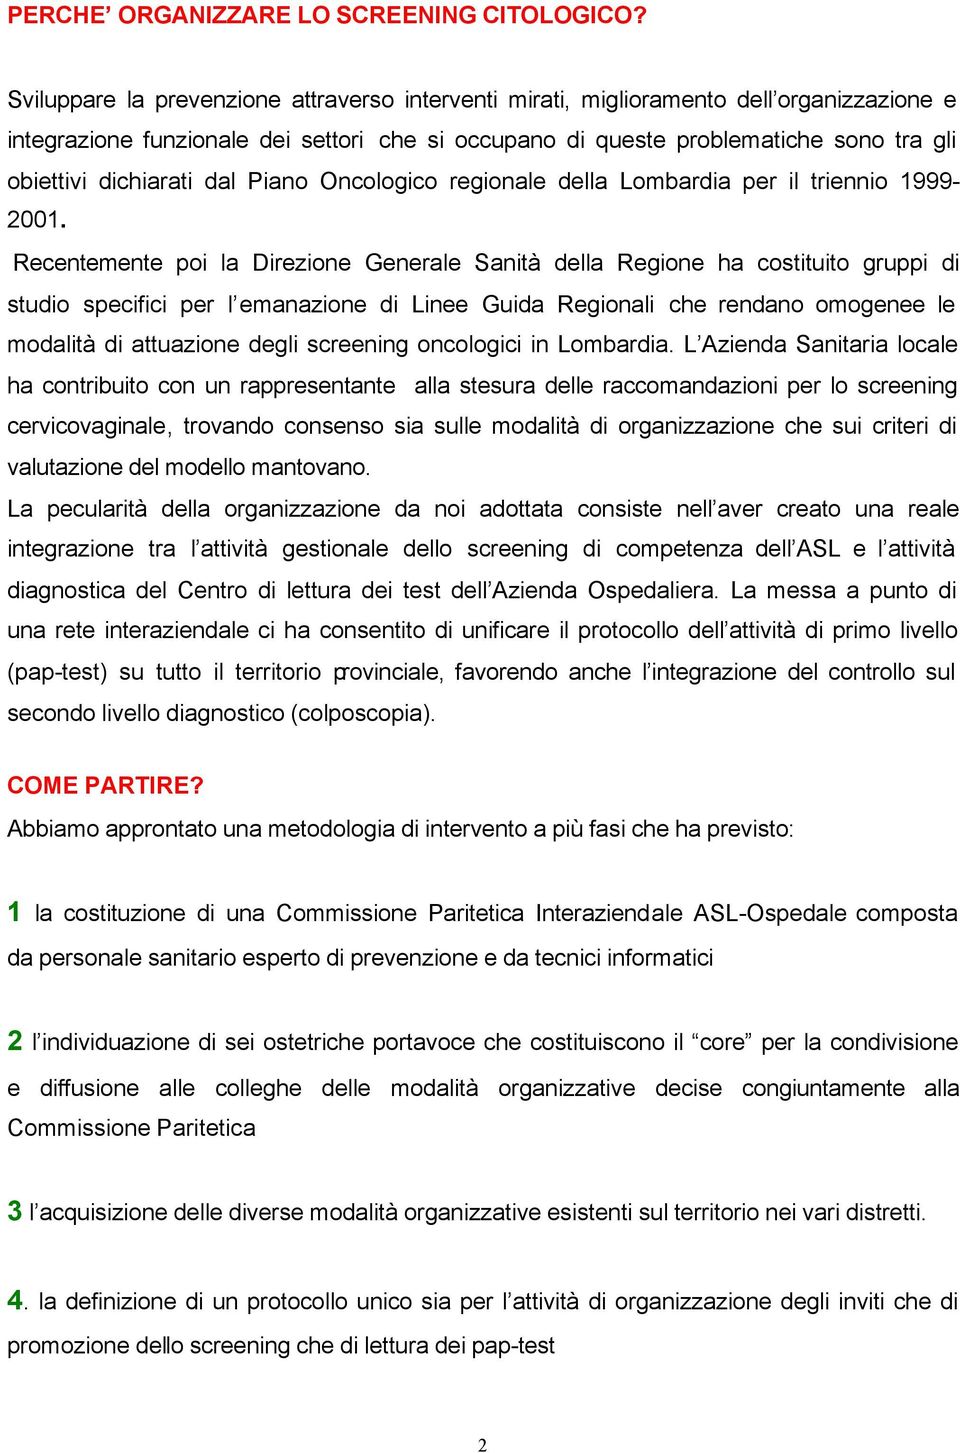 dichiarati dal Piano Oncologico regionale della Lombardia per il triennio 1999-2001.